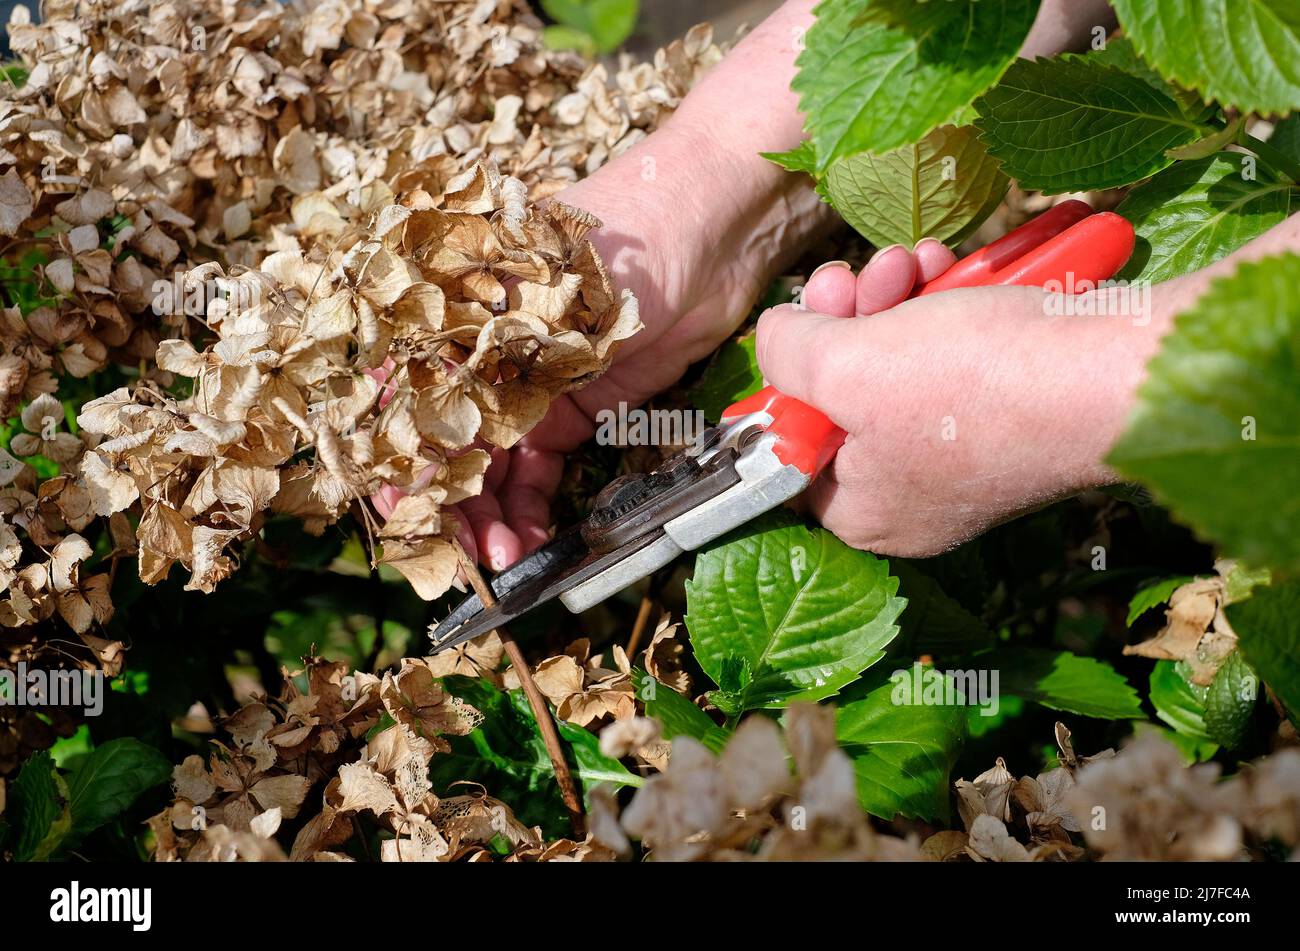 jardinera hembra cortando planta de hortensias en jardín inglés, norfolk, inglaterra Foto de stock